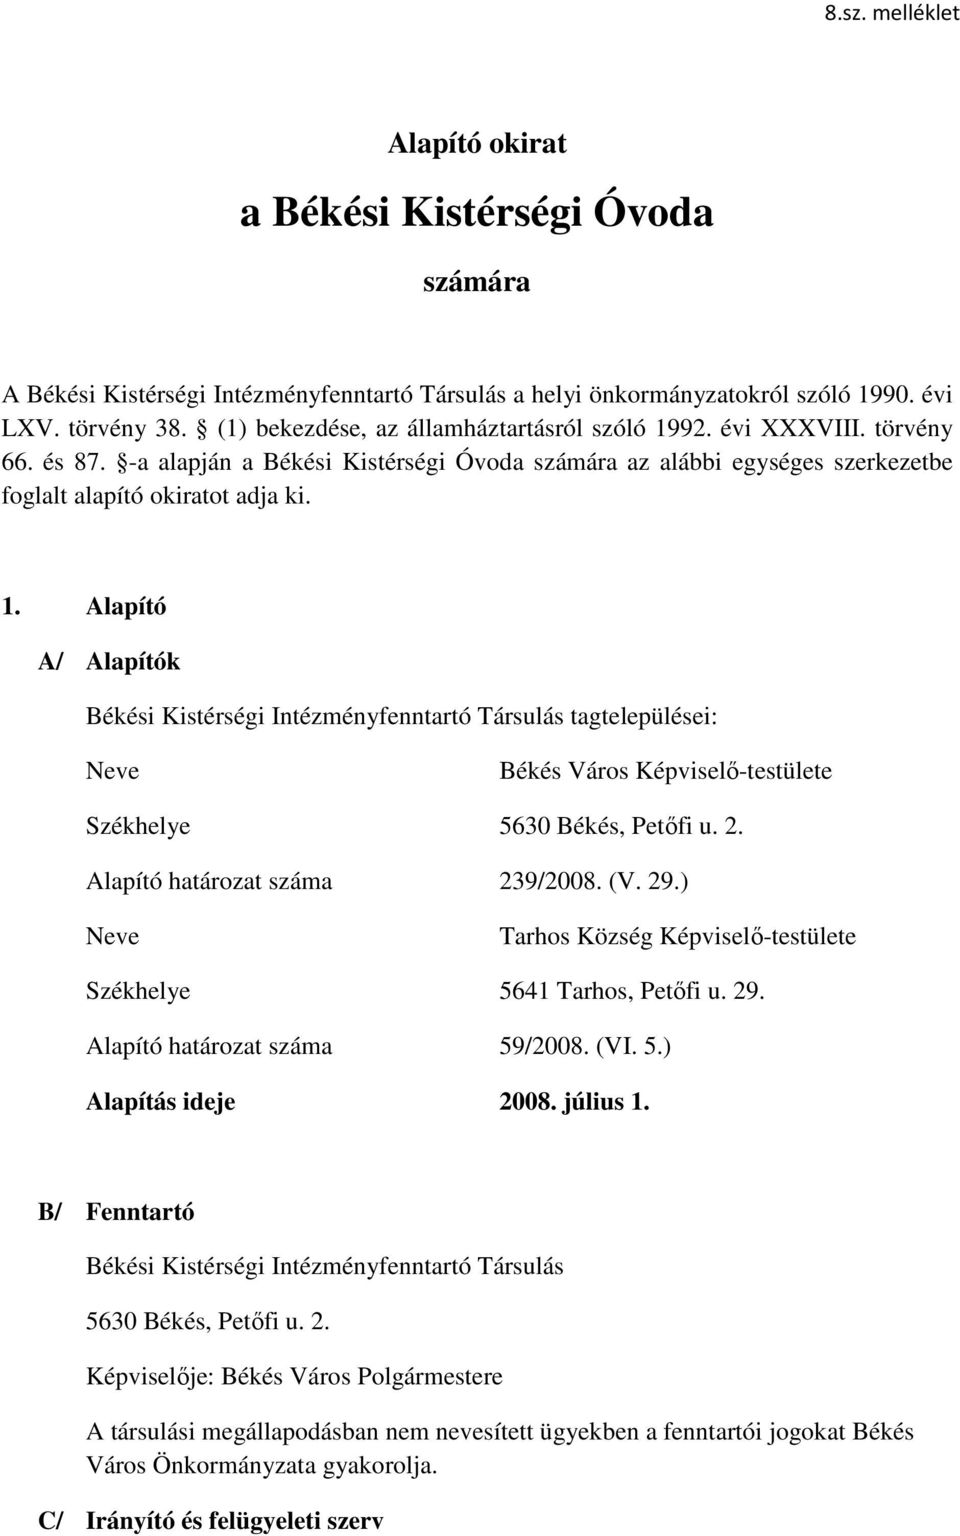 2. Alapító határozat száma 239/2008. (V. 29.) Neve Tarhos Község Képviselı-testülete Székhelye 5641 Tarhos, Petıfi u. 29. Alapító határozat száma 59/2008. (VI. 5.) Alapítás ideje 2008. július 1.